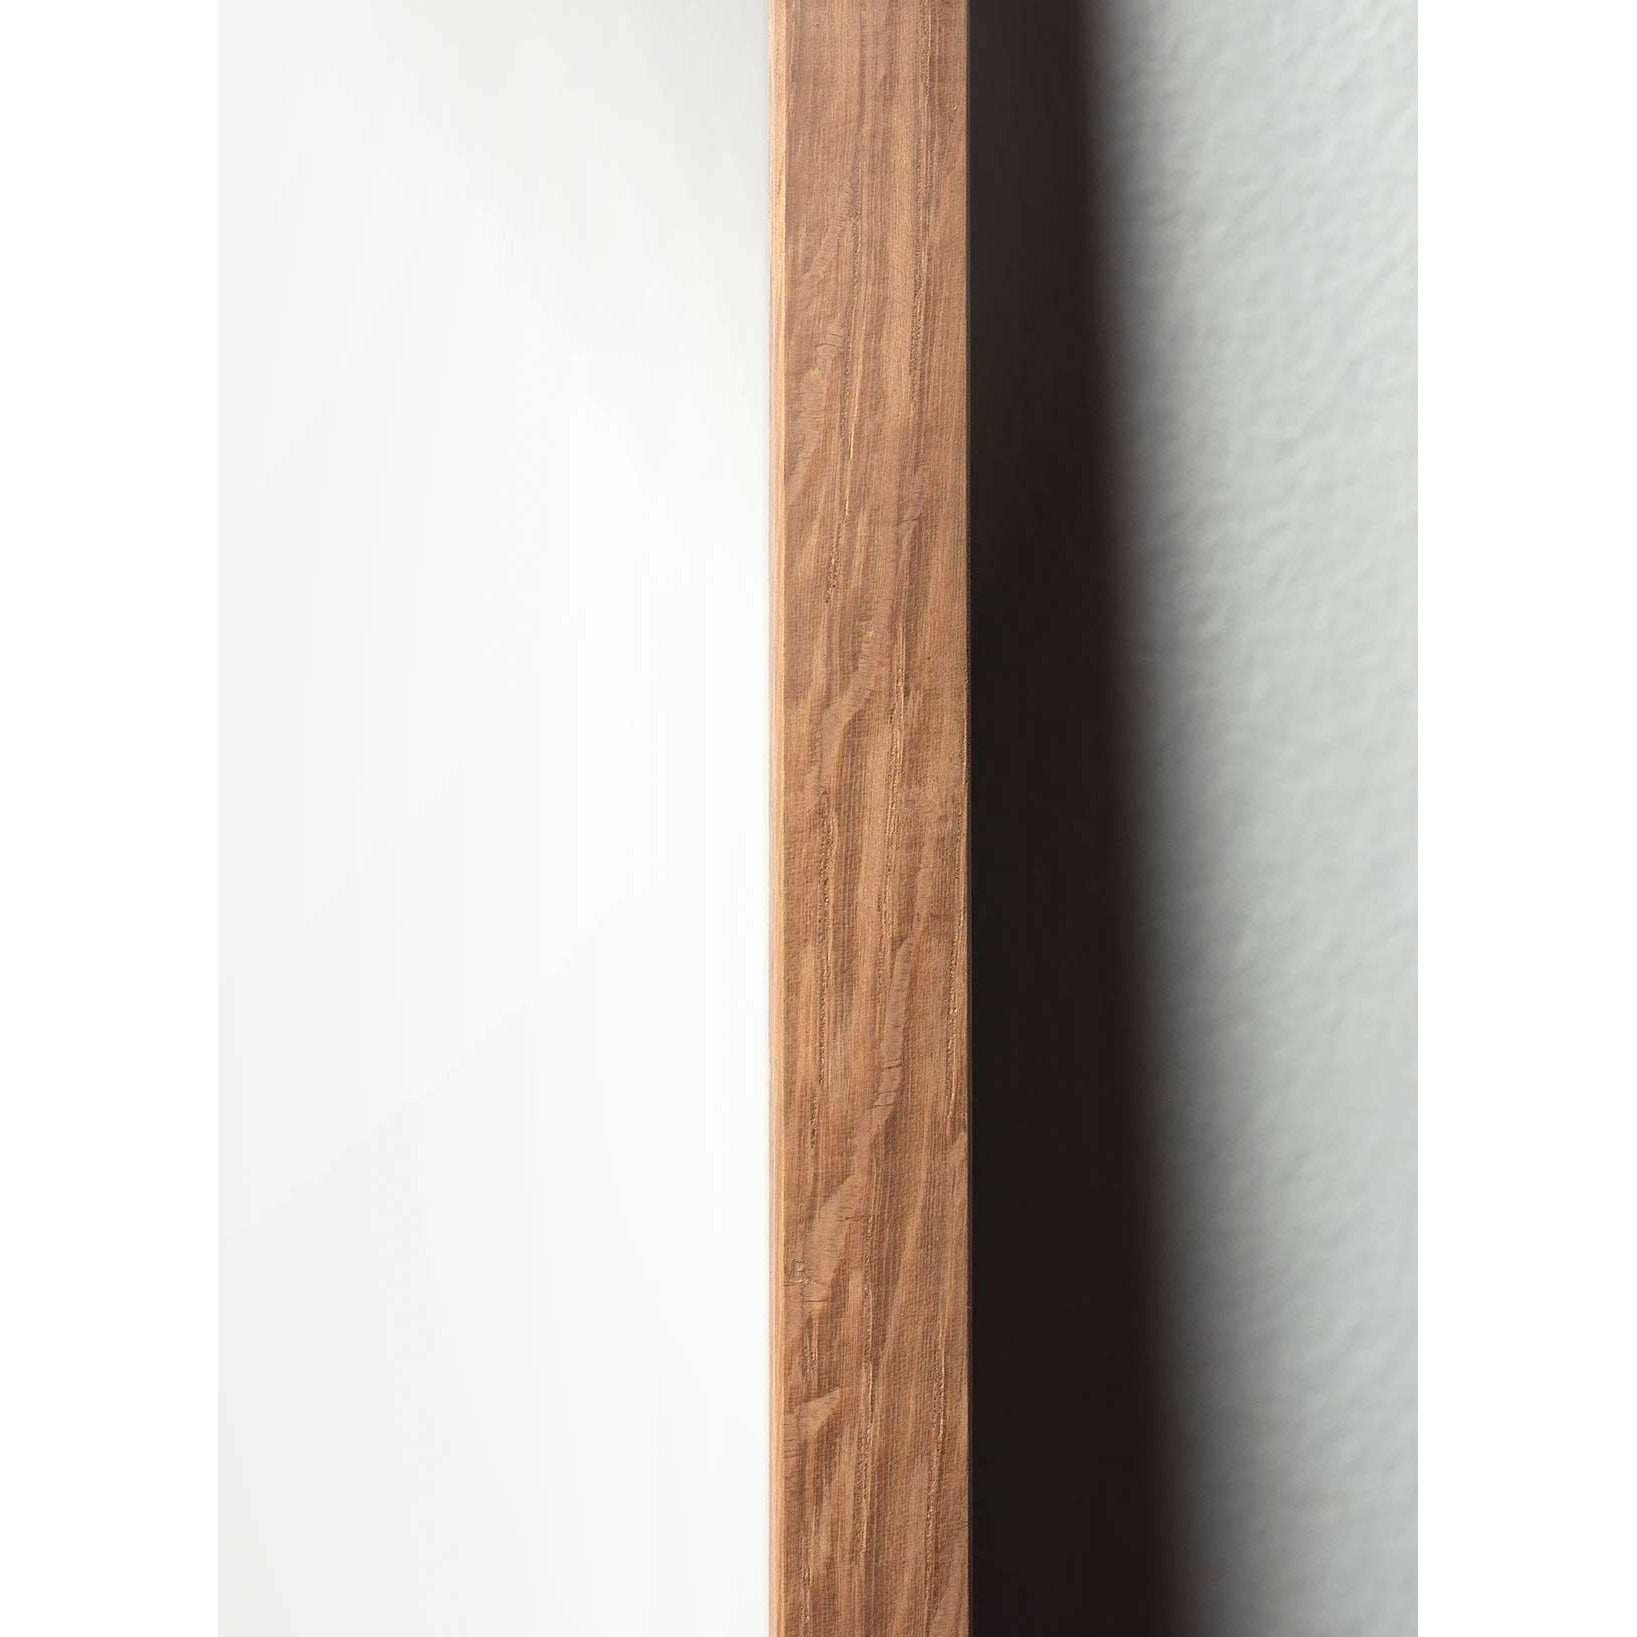 Poster classico di cono di pino da un'idea, cornice in legno chiaro 70x100 cm, sfondo colorato di sabbia